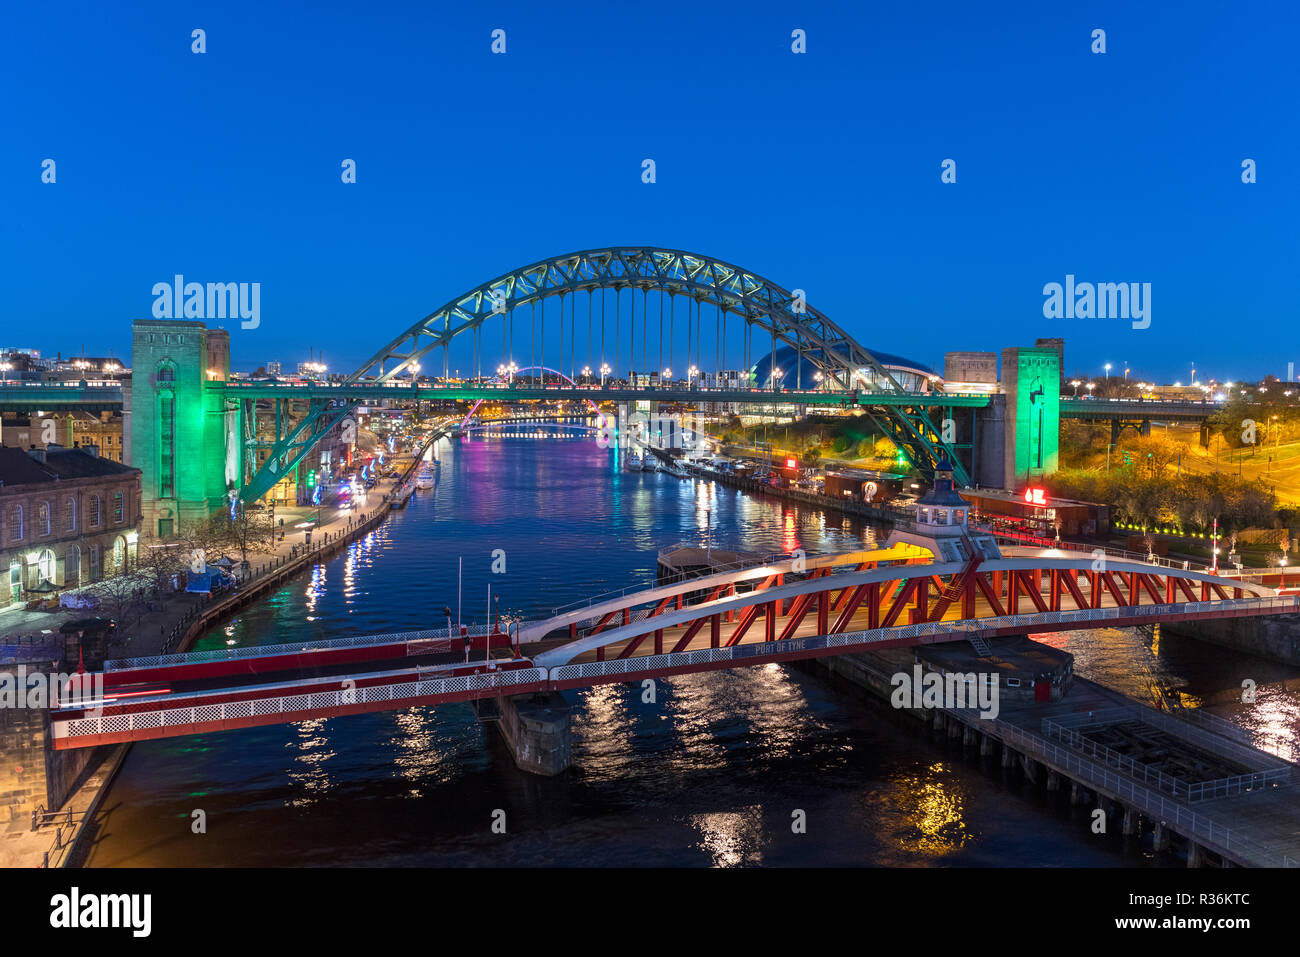 Les ponts de Newcastle. Vue aérienne de la rivière Tyne et Tyne Bridge at night, Newcastle upon Tyne, England, UK Banque D'Images